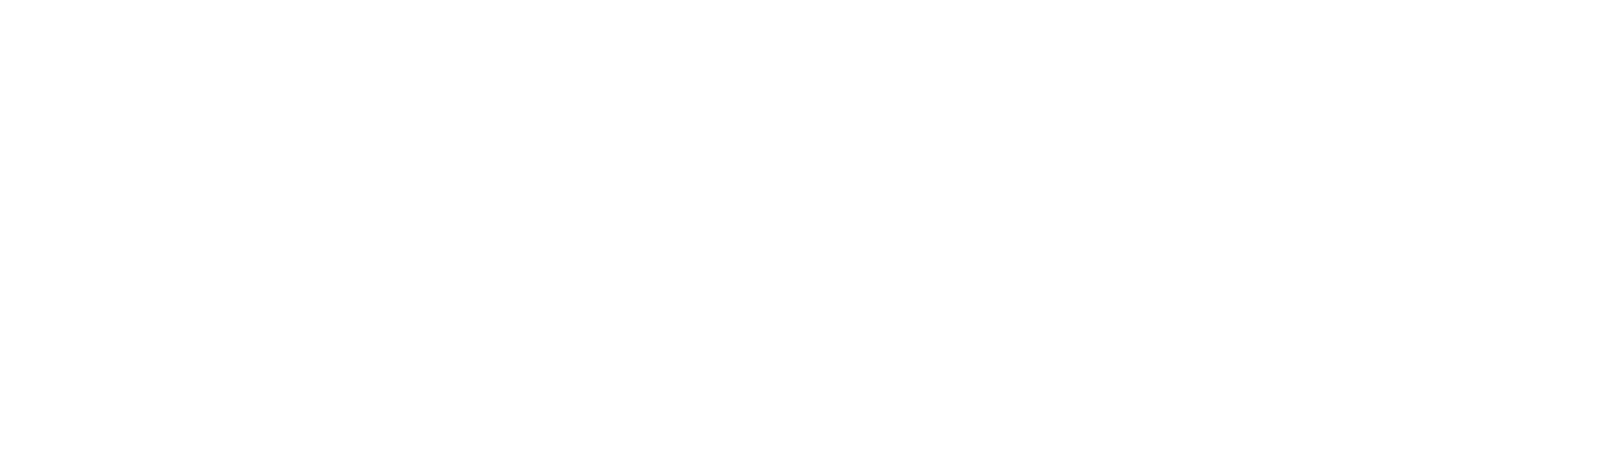 Boise Cascade
 logo large for dark backgrounds (transparent PNG)